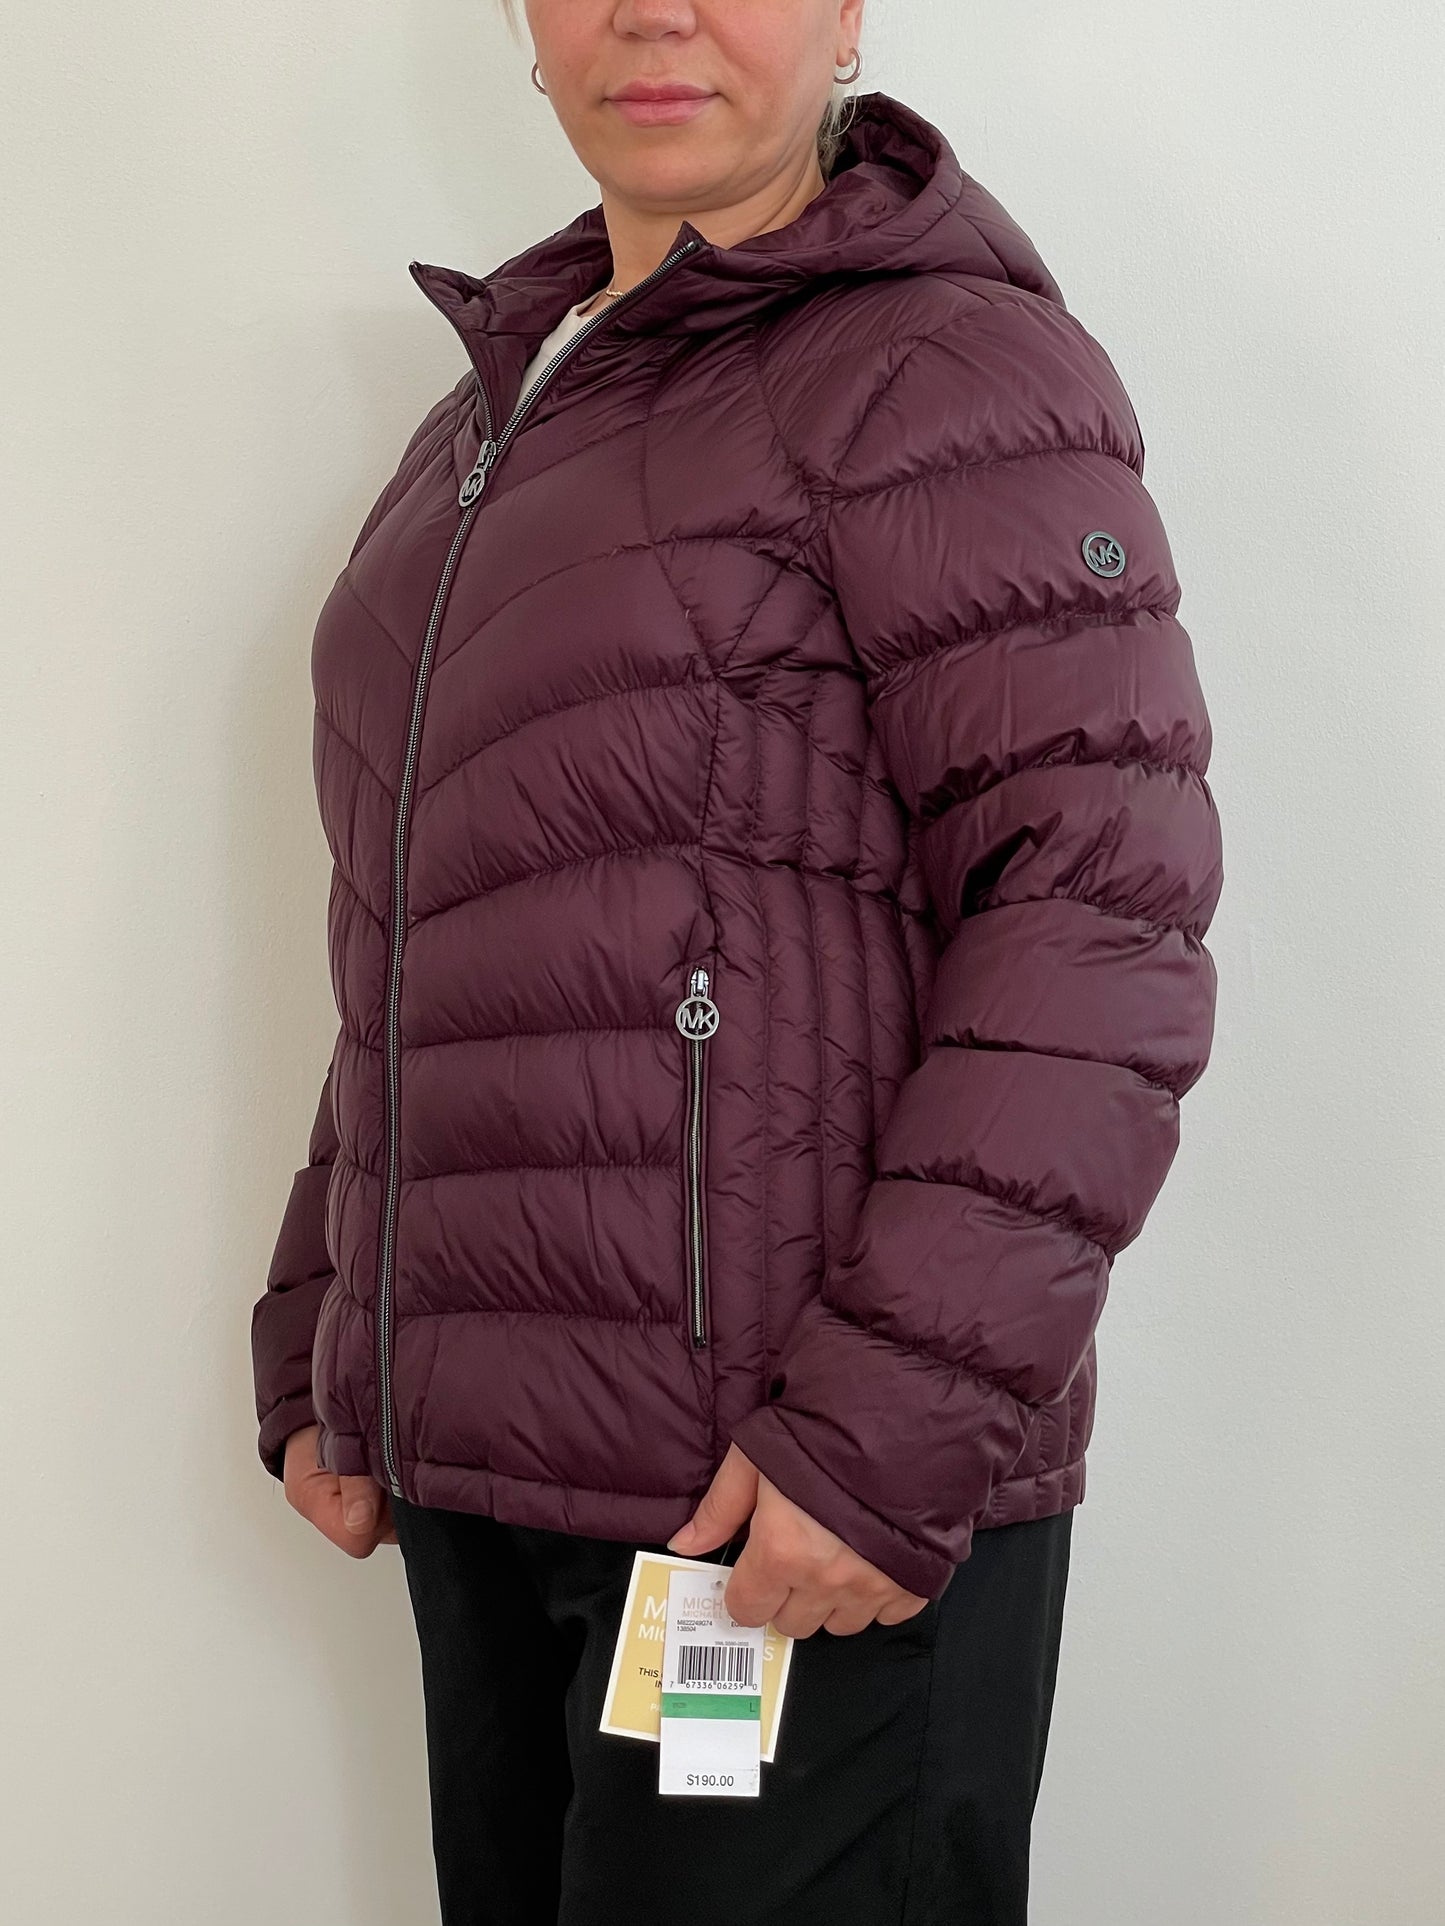 Michael Kors Women’s Packable Down Fill Puffer Jacket Burgundy